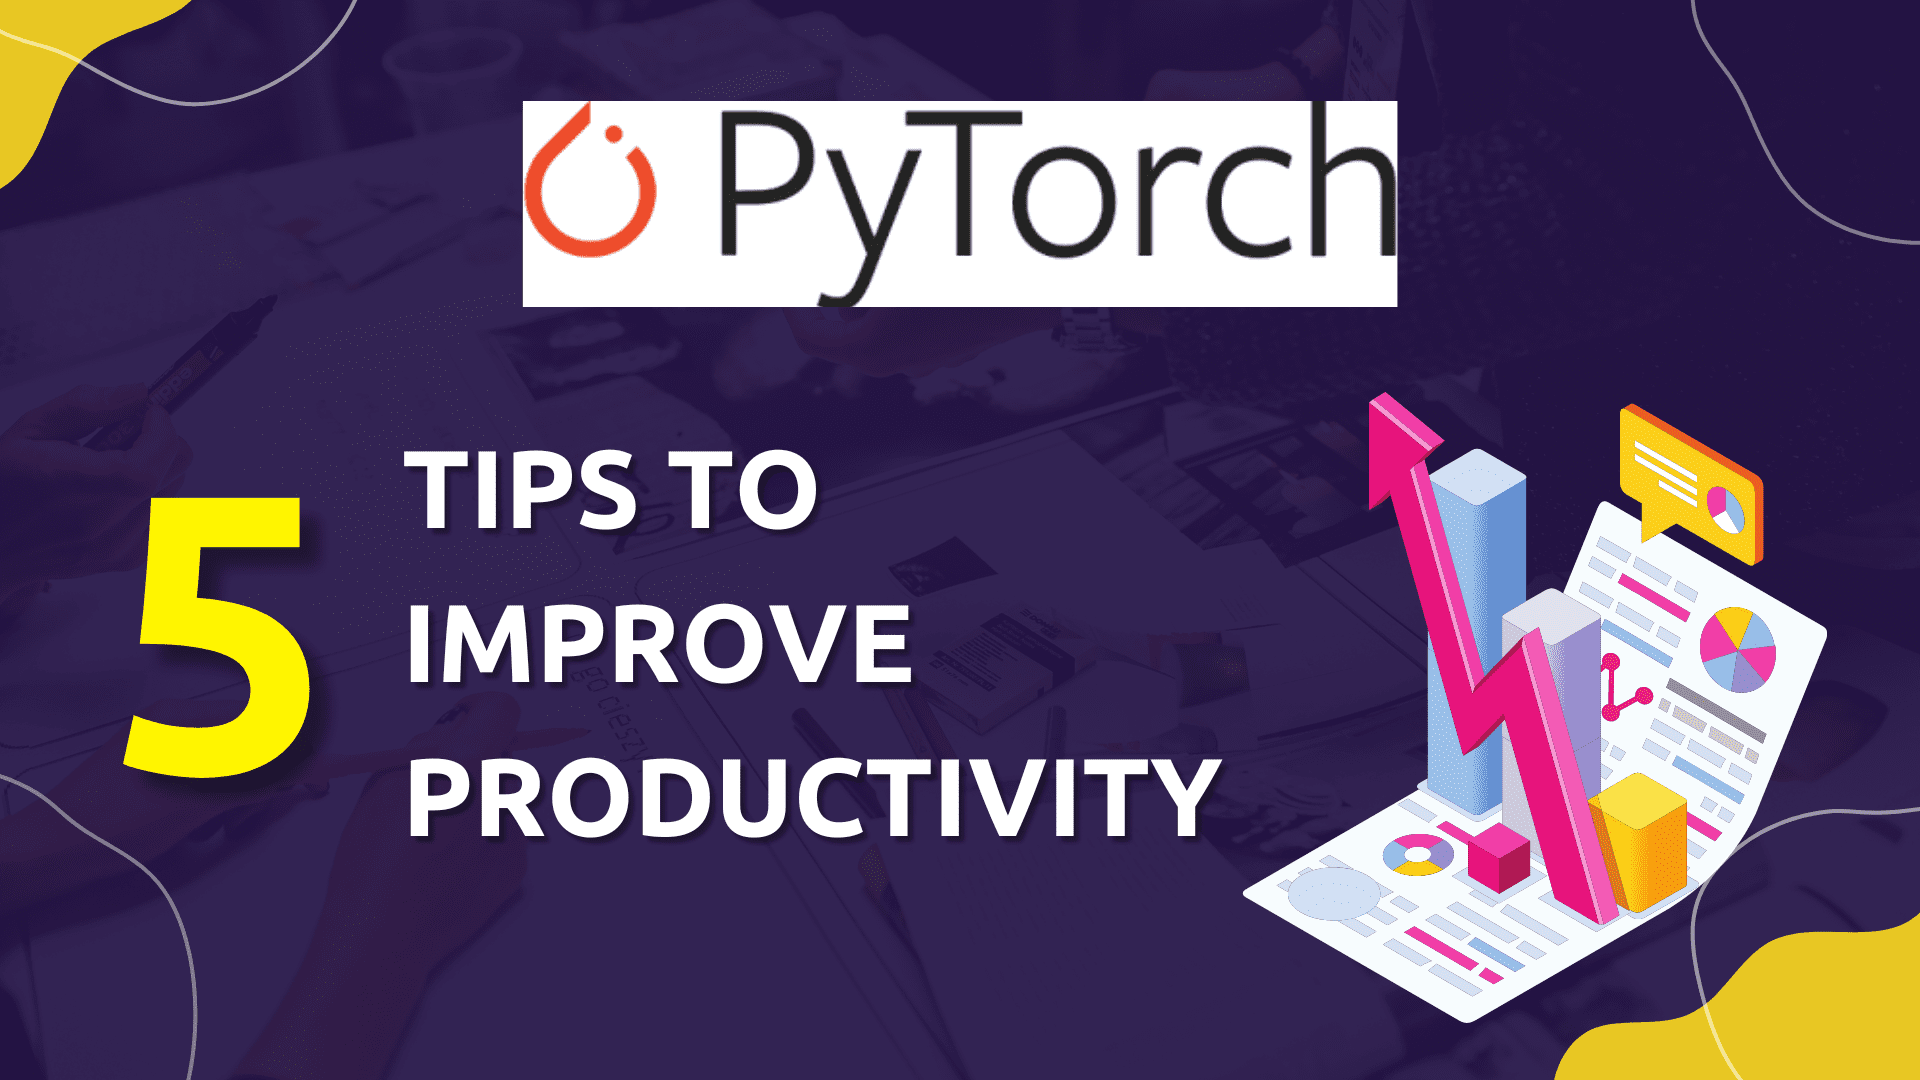 نصائح PyTorch لتعزيز إنتاجيتك